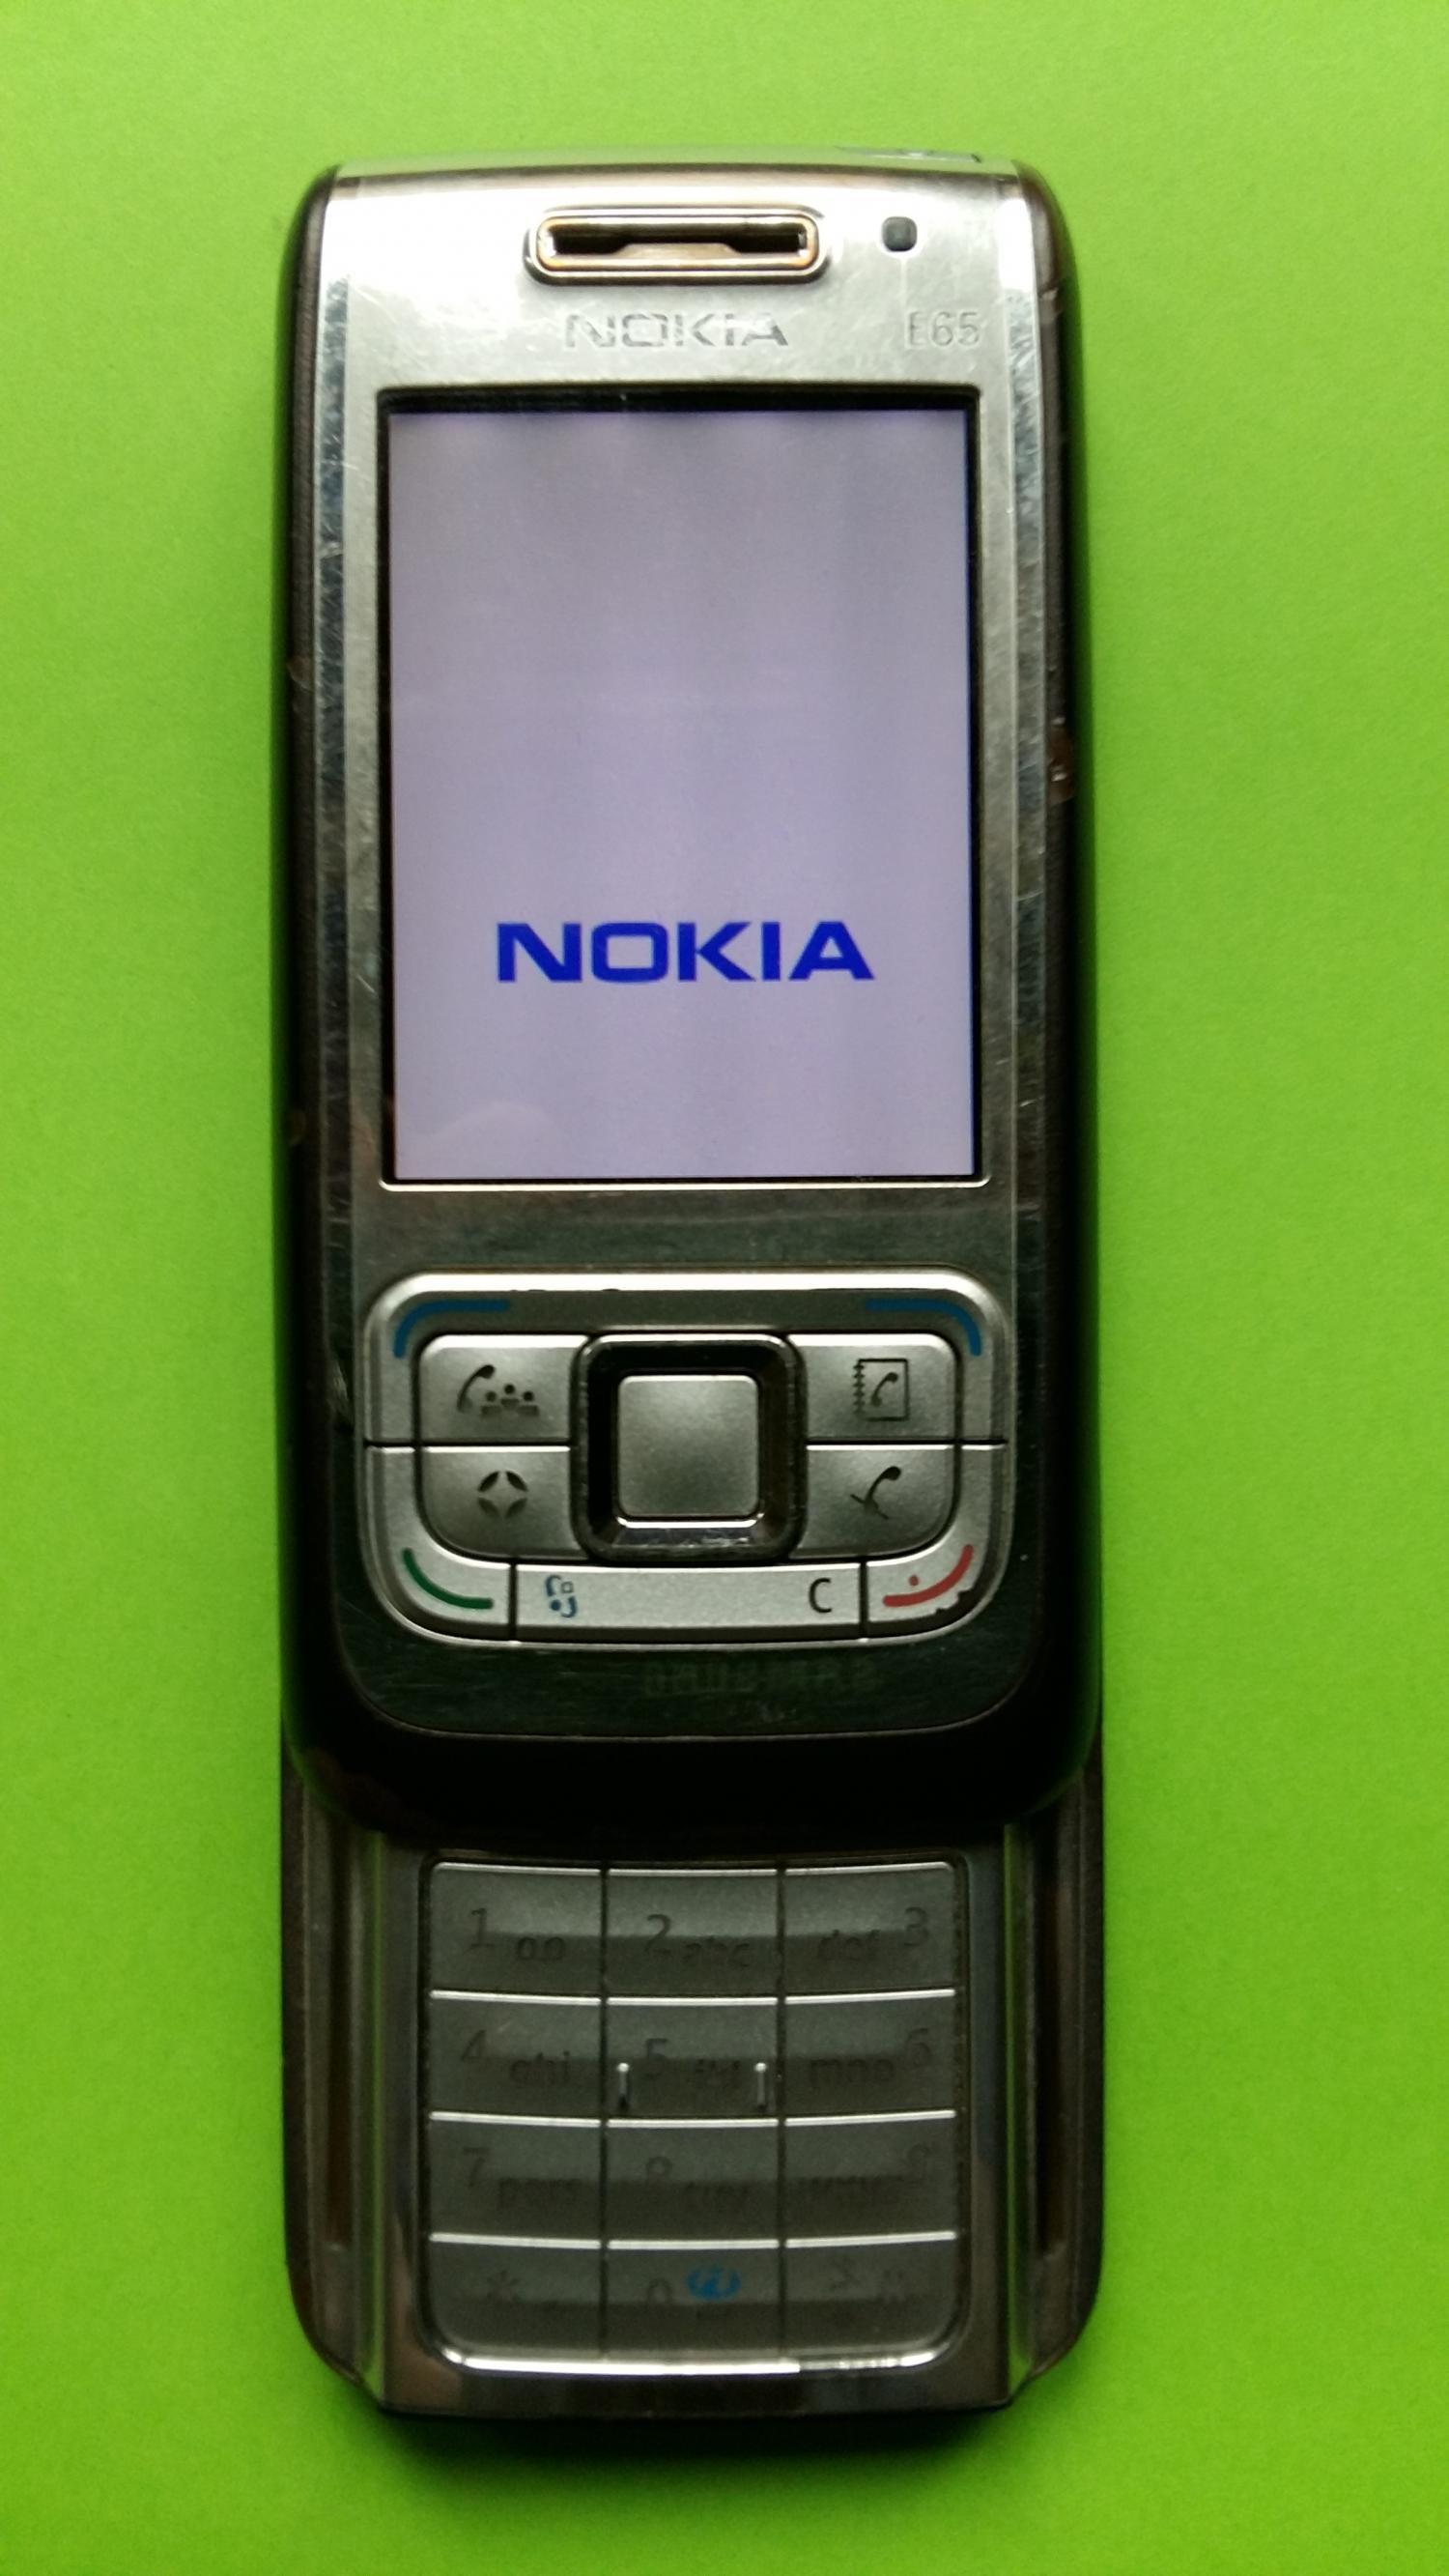 image-7312717-Nokia E65-1 (2)2.jpg